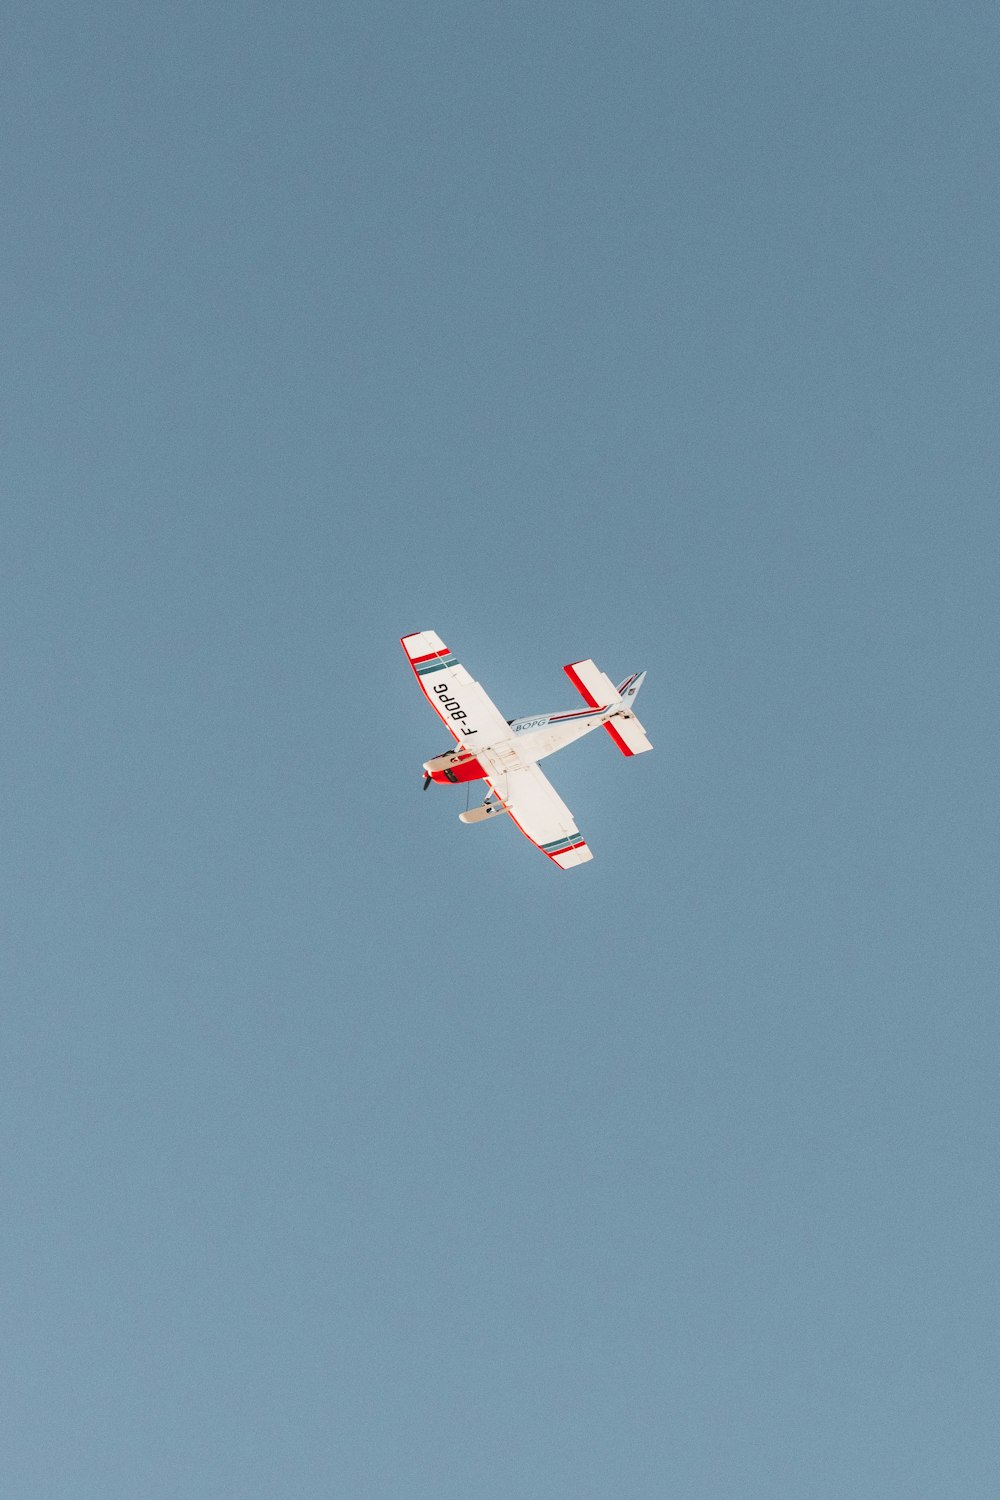 una avioneta volando a través de un cielo azul